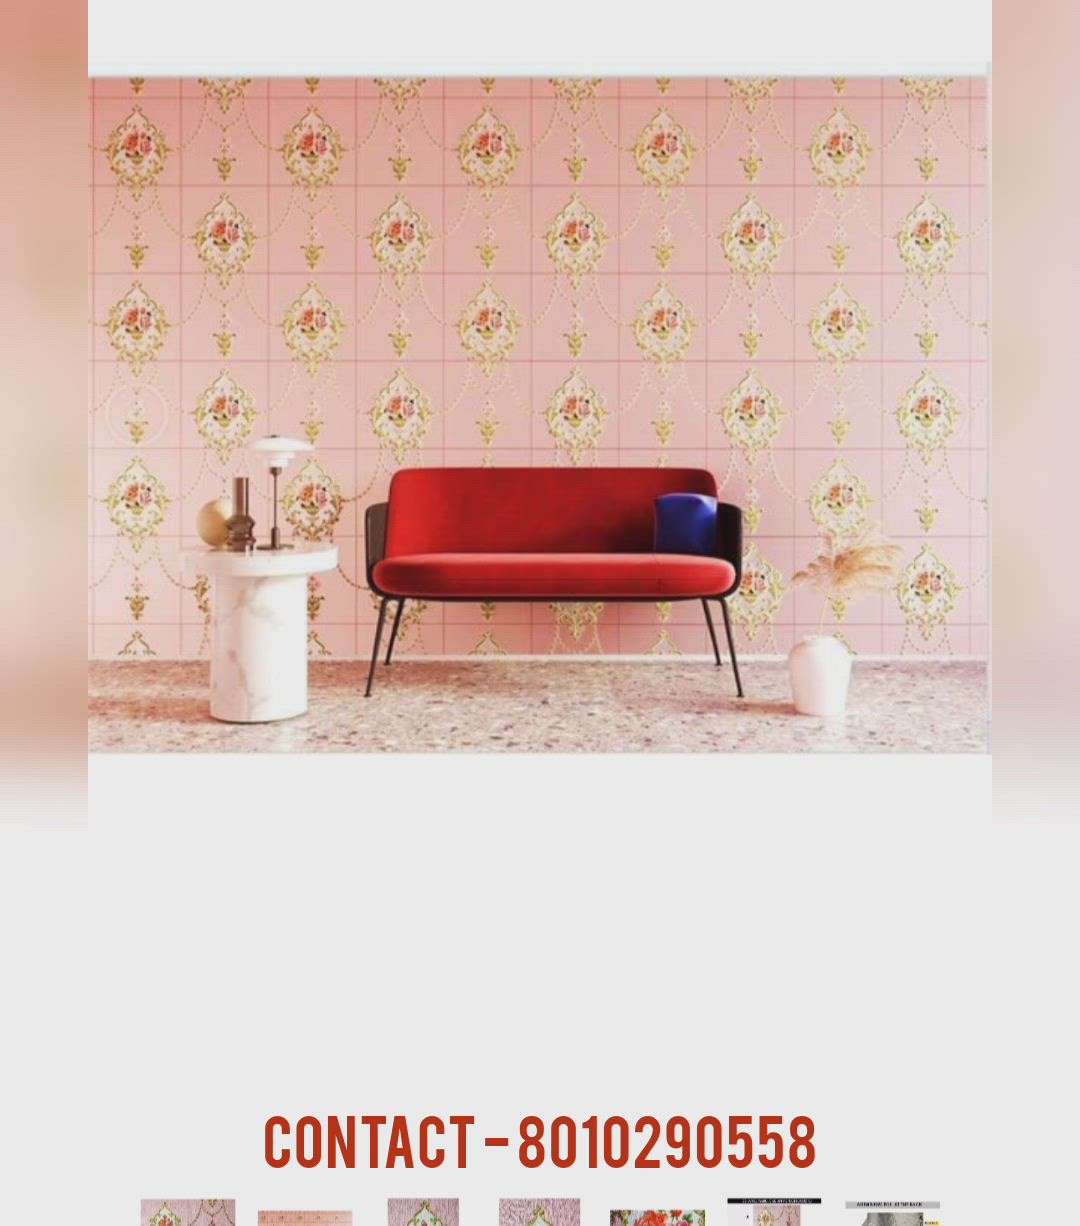 3D wallpaper :-  pvc foam wallpaper

-  @30 sq. Feet

_ 88603. 01718   _ 80102 . 90558

#3DWallPaper #3dwallart #3d
#WallDecors #wallpaperindia
#wallpaper #koloapp  #wall  #pvcfoam #BedroomDecor